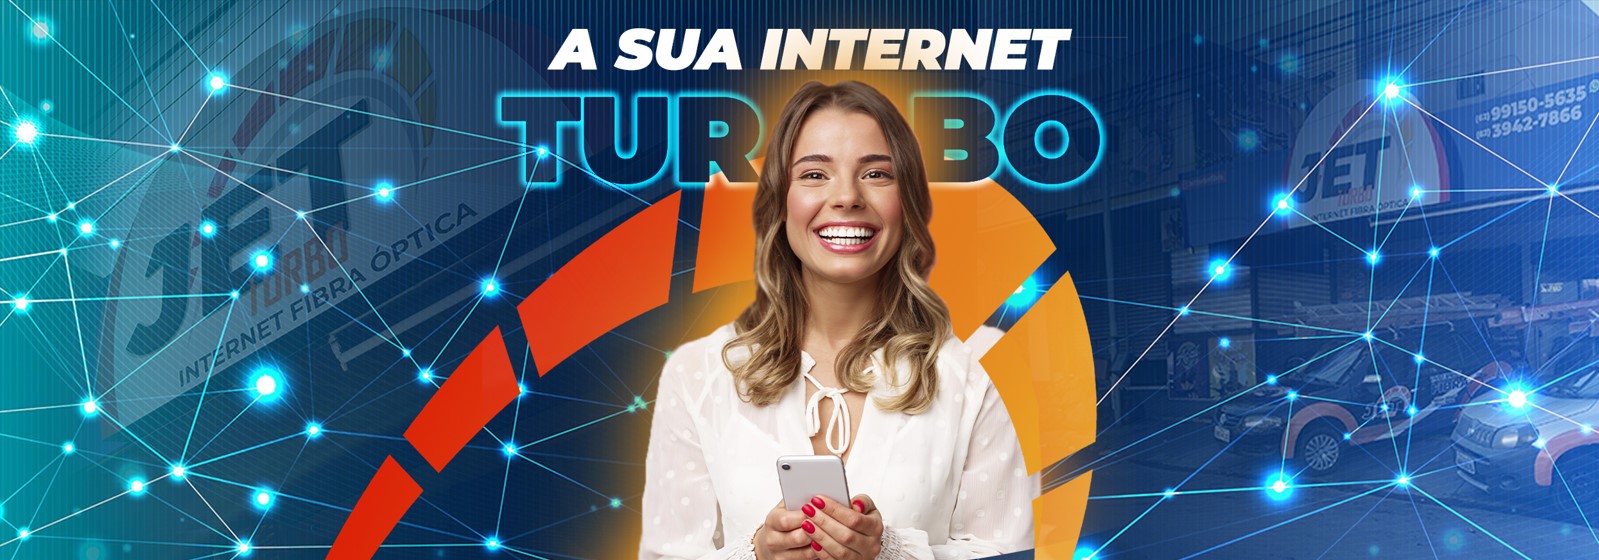 Internet Fibra em Goiânia Jet Turbo - a melhore internet de goiania